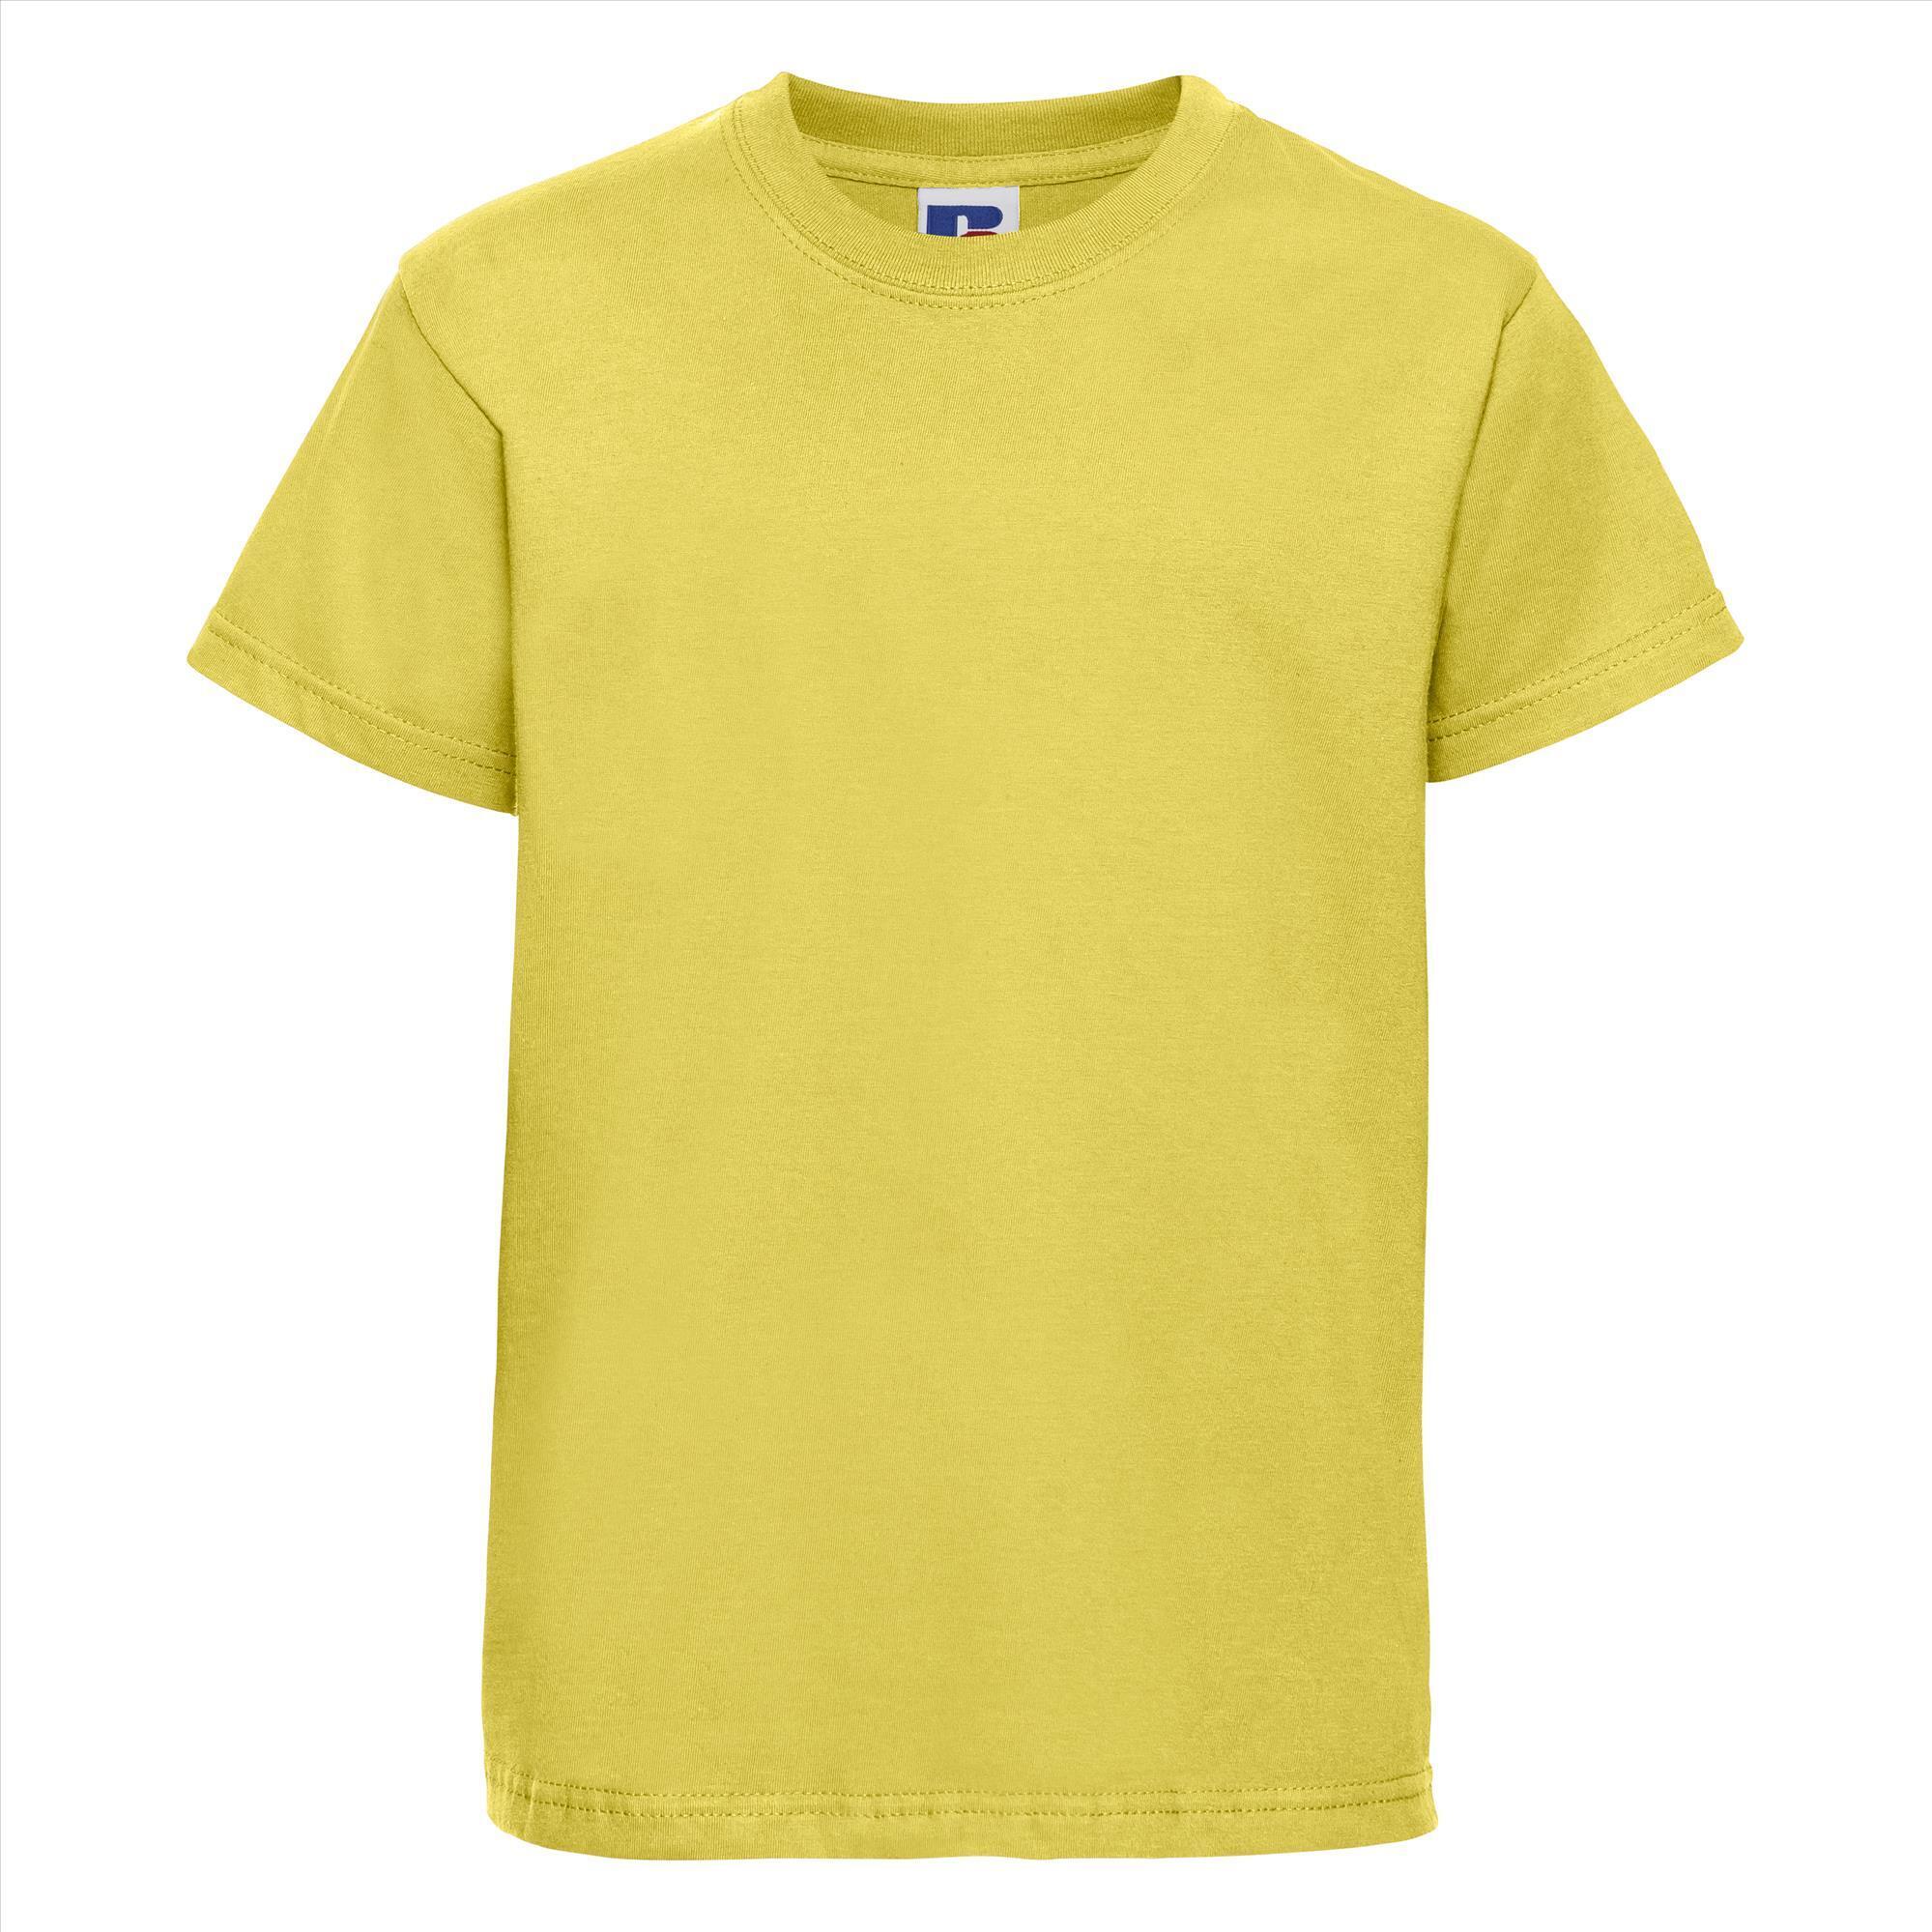 Kinder t-shirt geel te personaliseren bedrukbaar